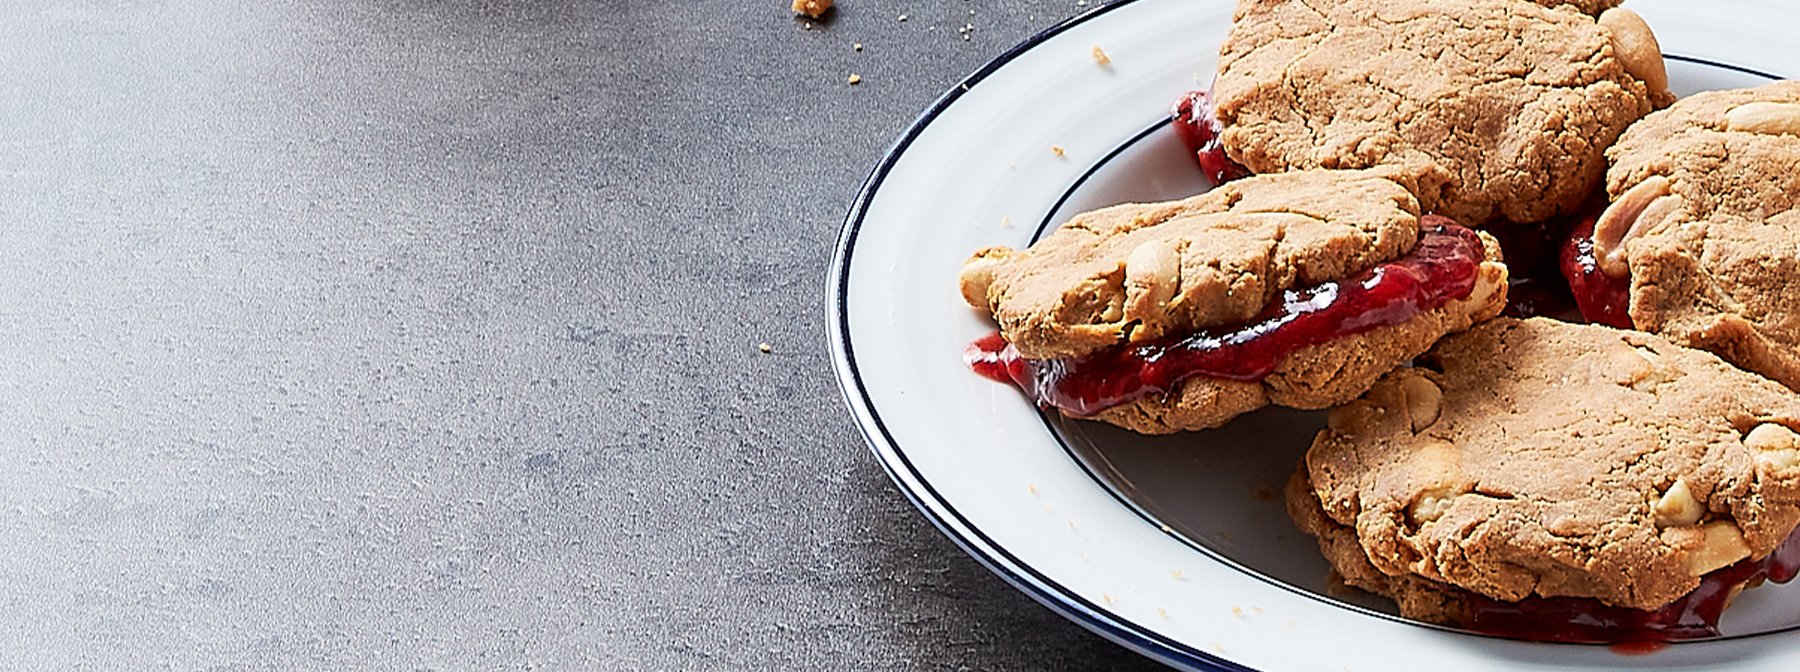 High-Protein Peanut Butter Sandwich Biscuits | World’s Kitchen